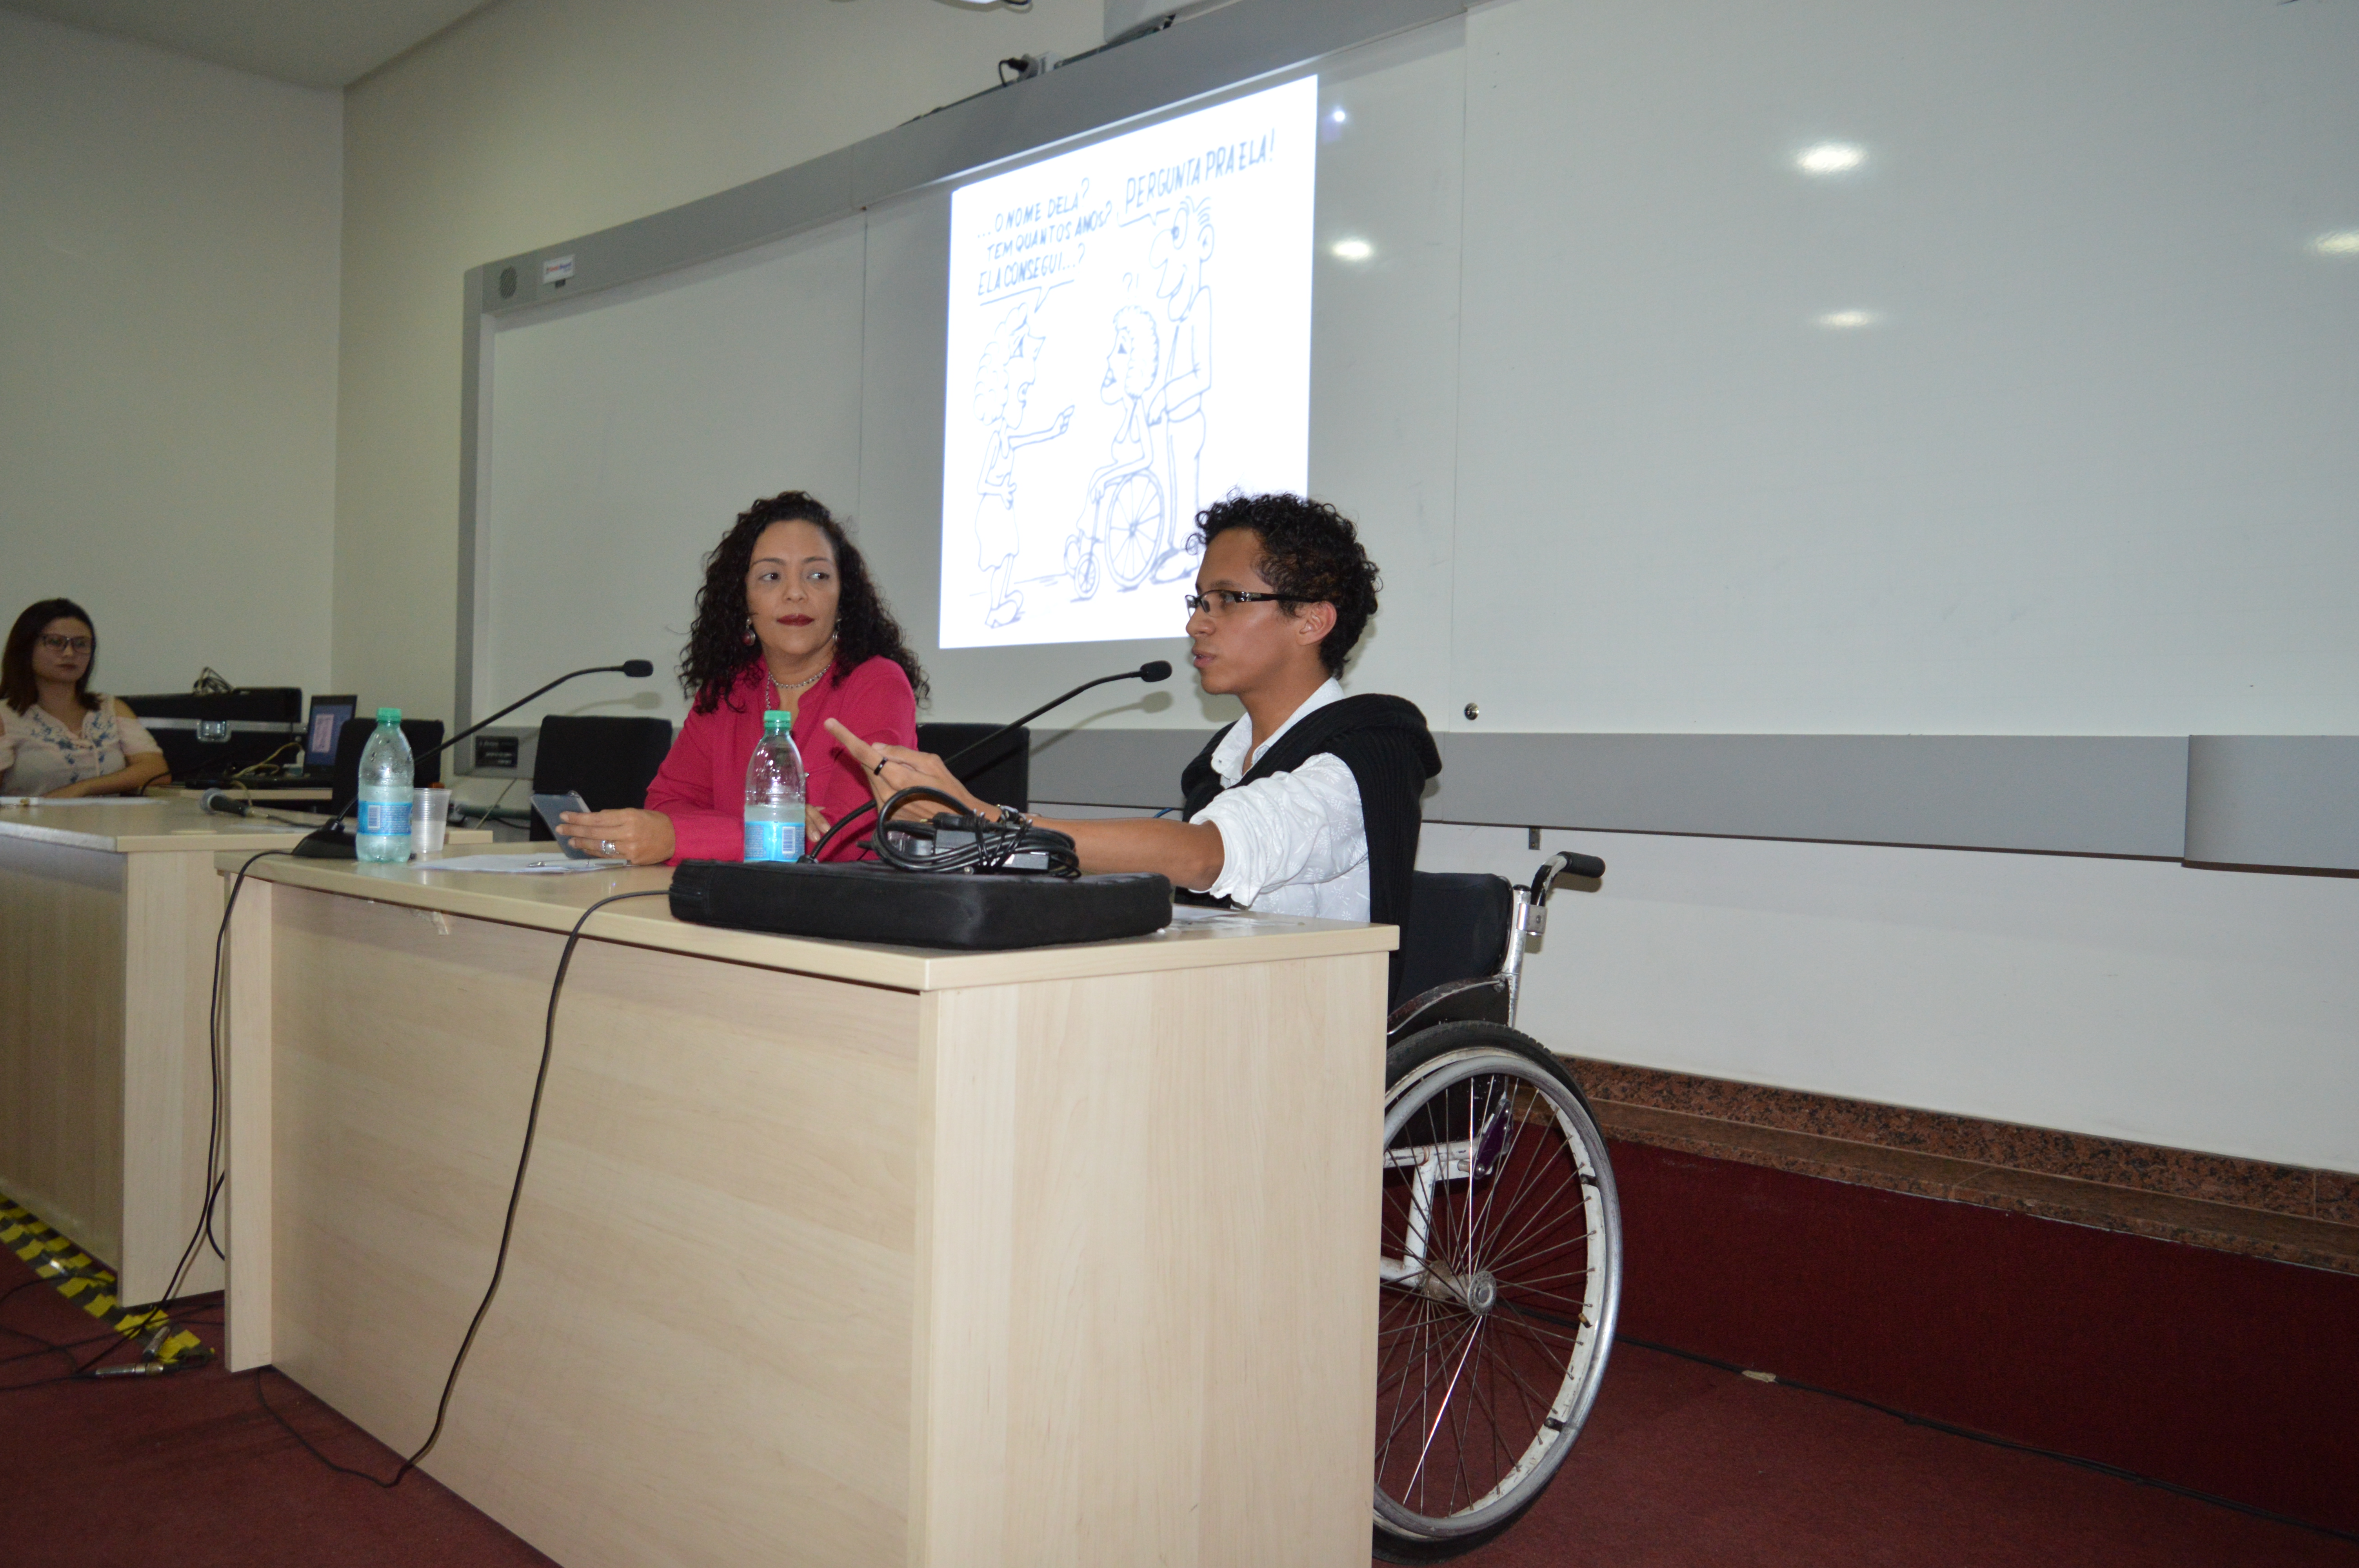 Napne realizou atividade nesta terça-feira, 4 de dezembro, na Cinemateca, para discutir o capacitismo e suas consequências na vida do brasileiro com deficiência física.